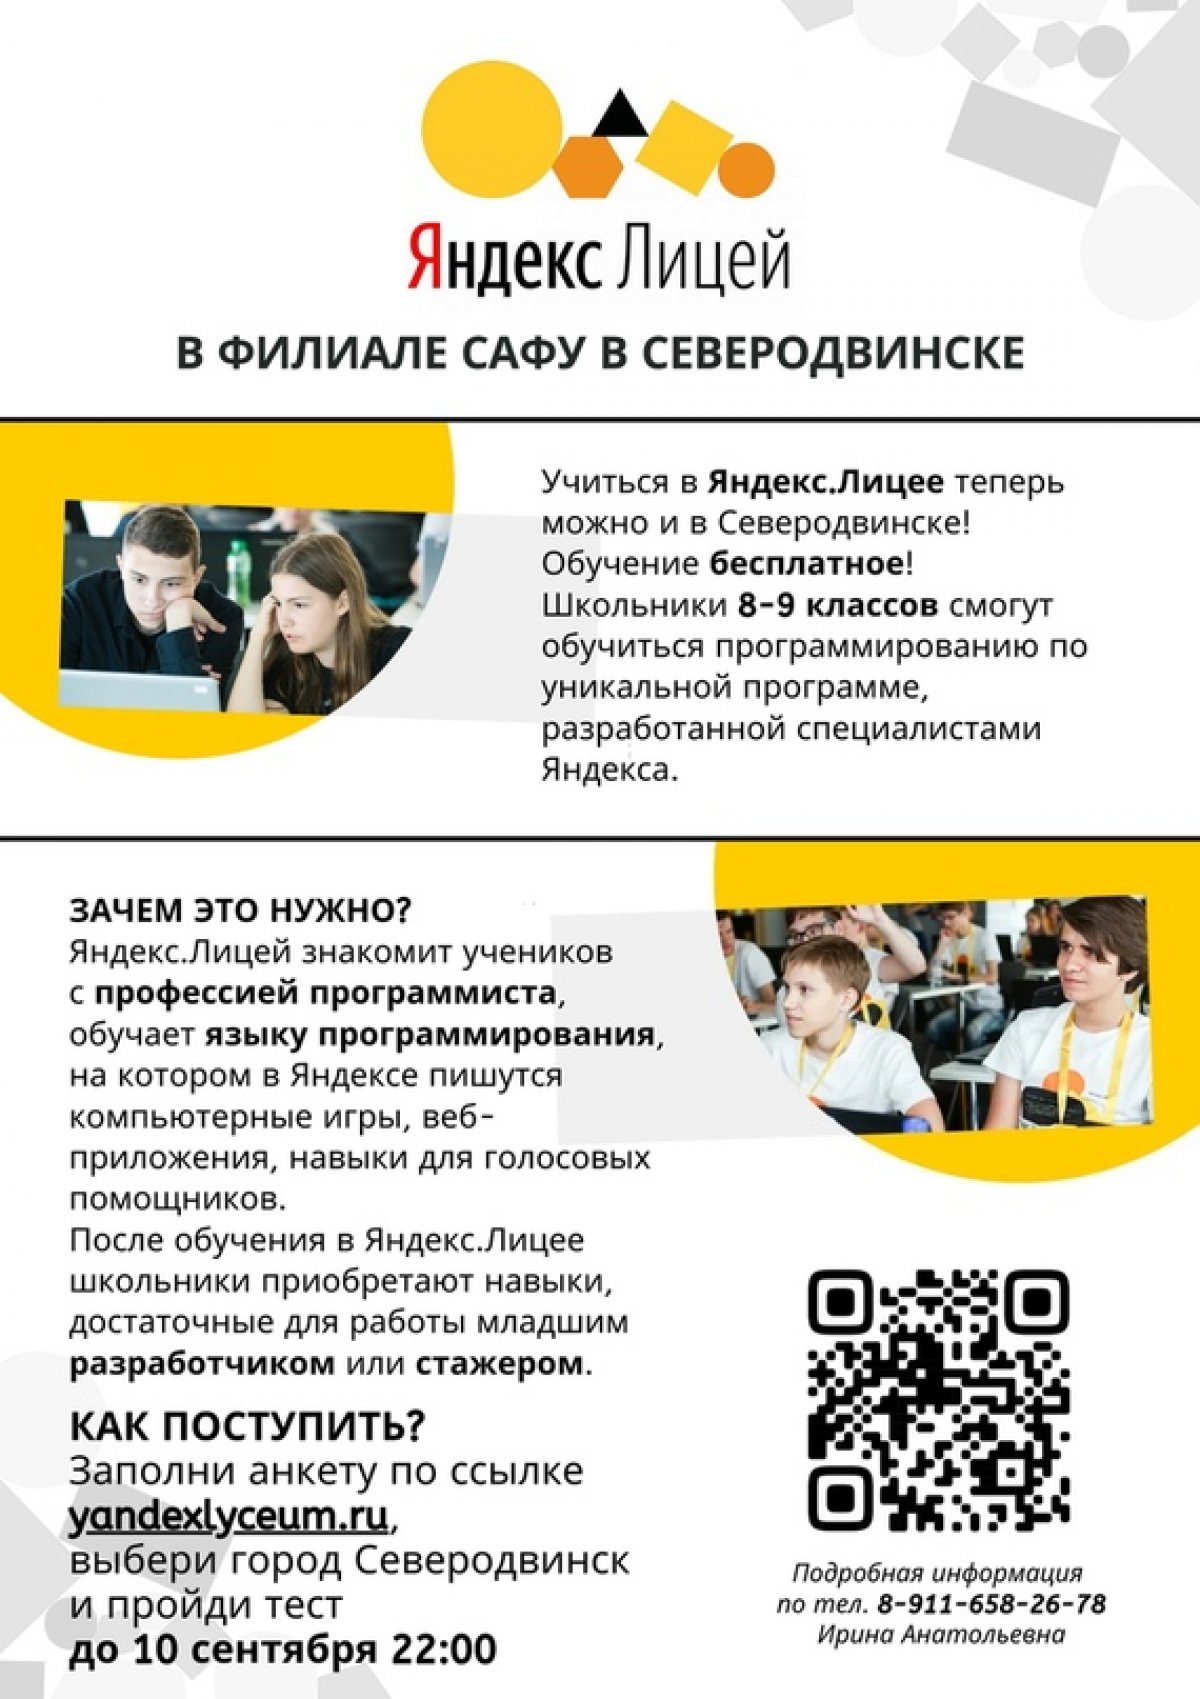 📚 Если ты учишься в 8 - 9 классах школ города Северодвинска, у тебя есть возможность бесплатно обучиться программированию в Яндекс.Лицее!